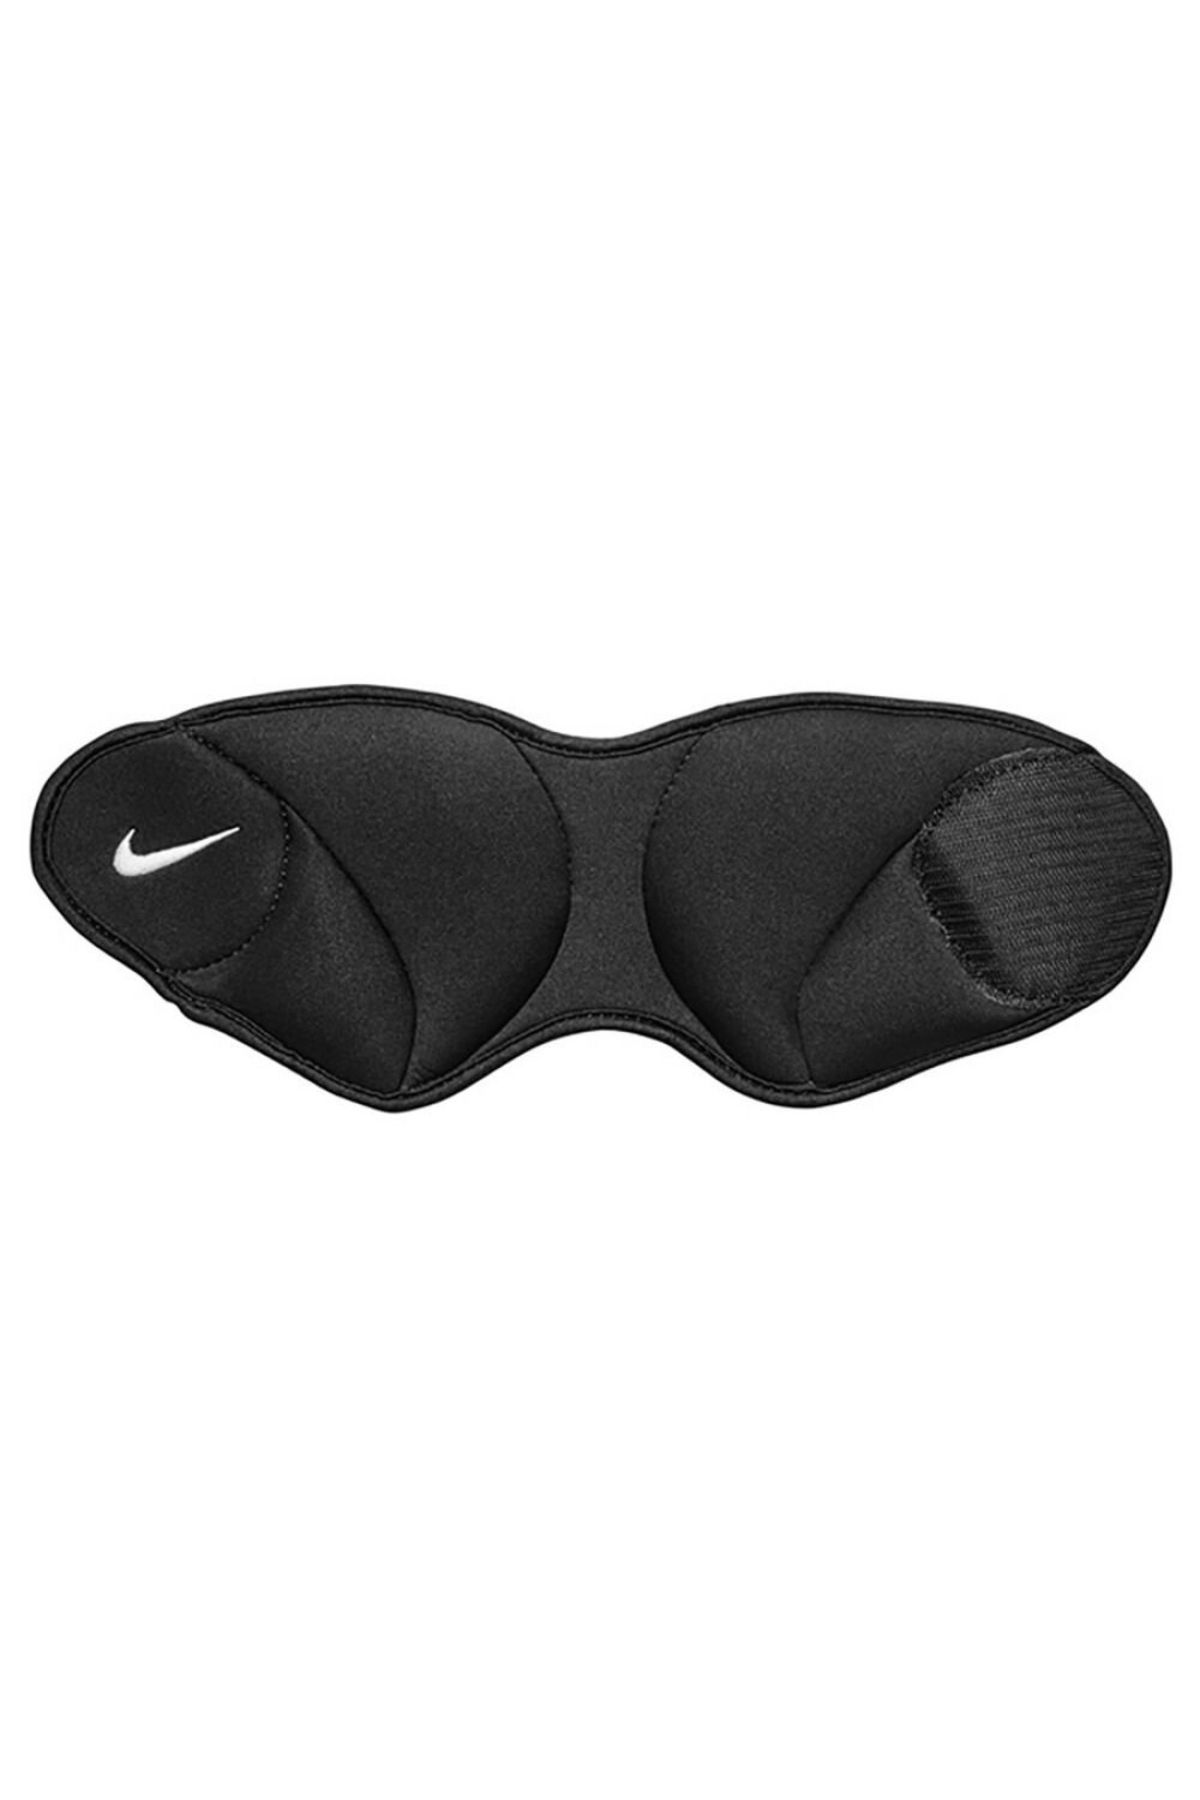 Nike Wrist Weights 1 Lb/.45 Kg Each Siyah Osfm Unisex Bilek Ağırlığı - N.100.0817.010.os